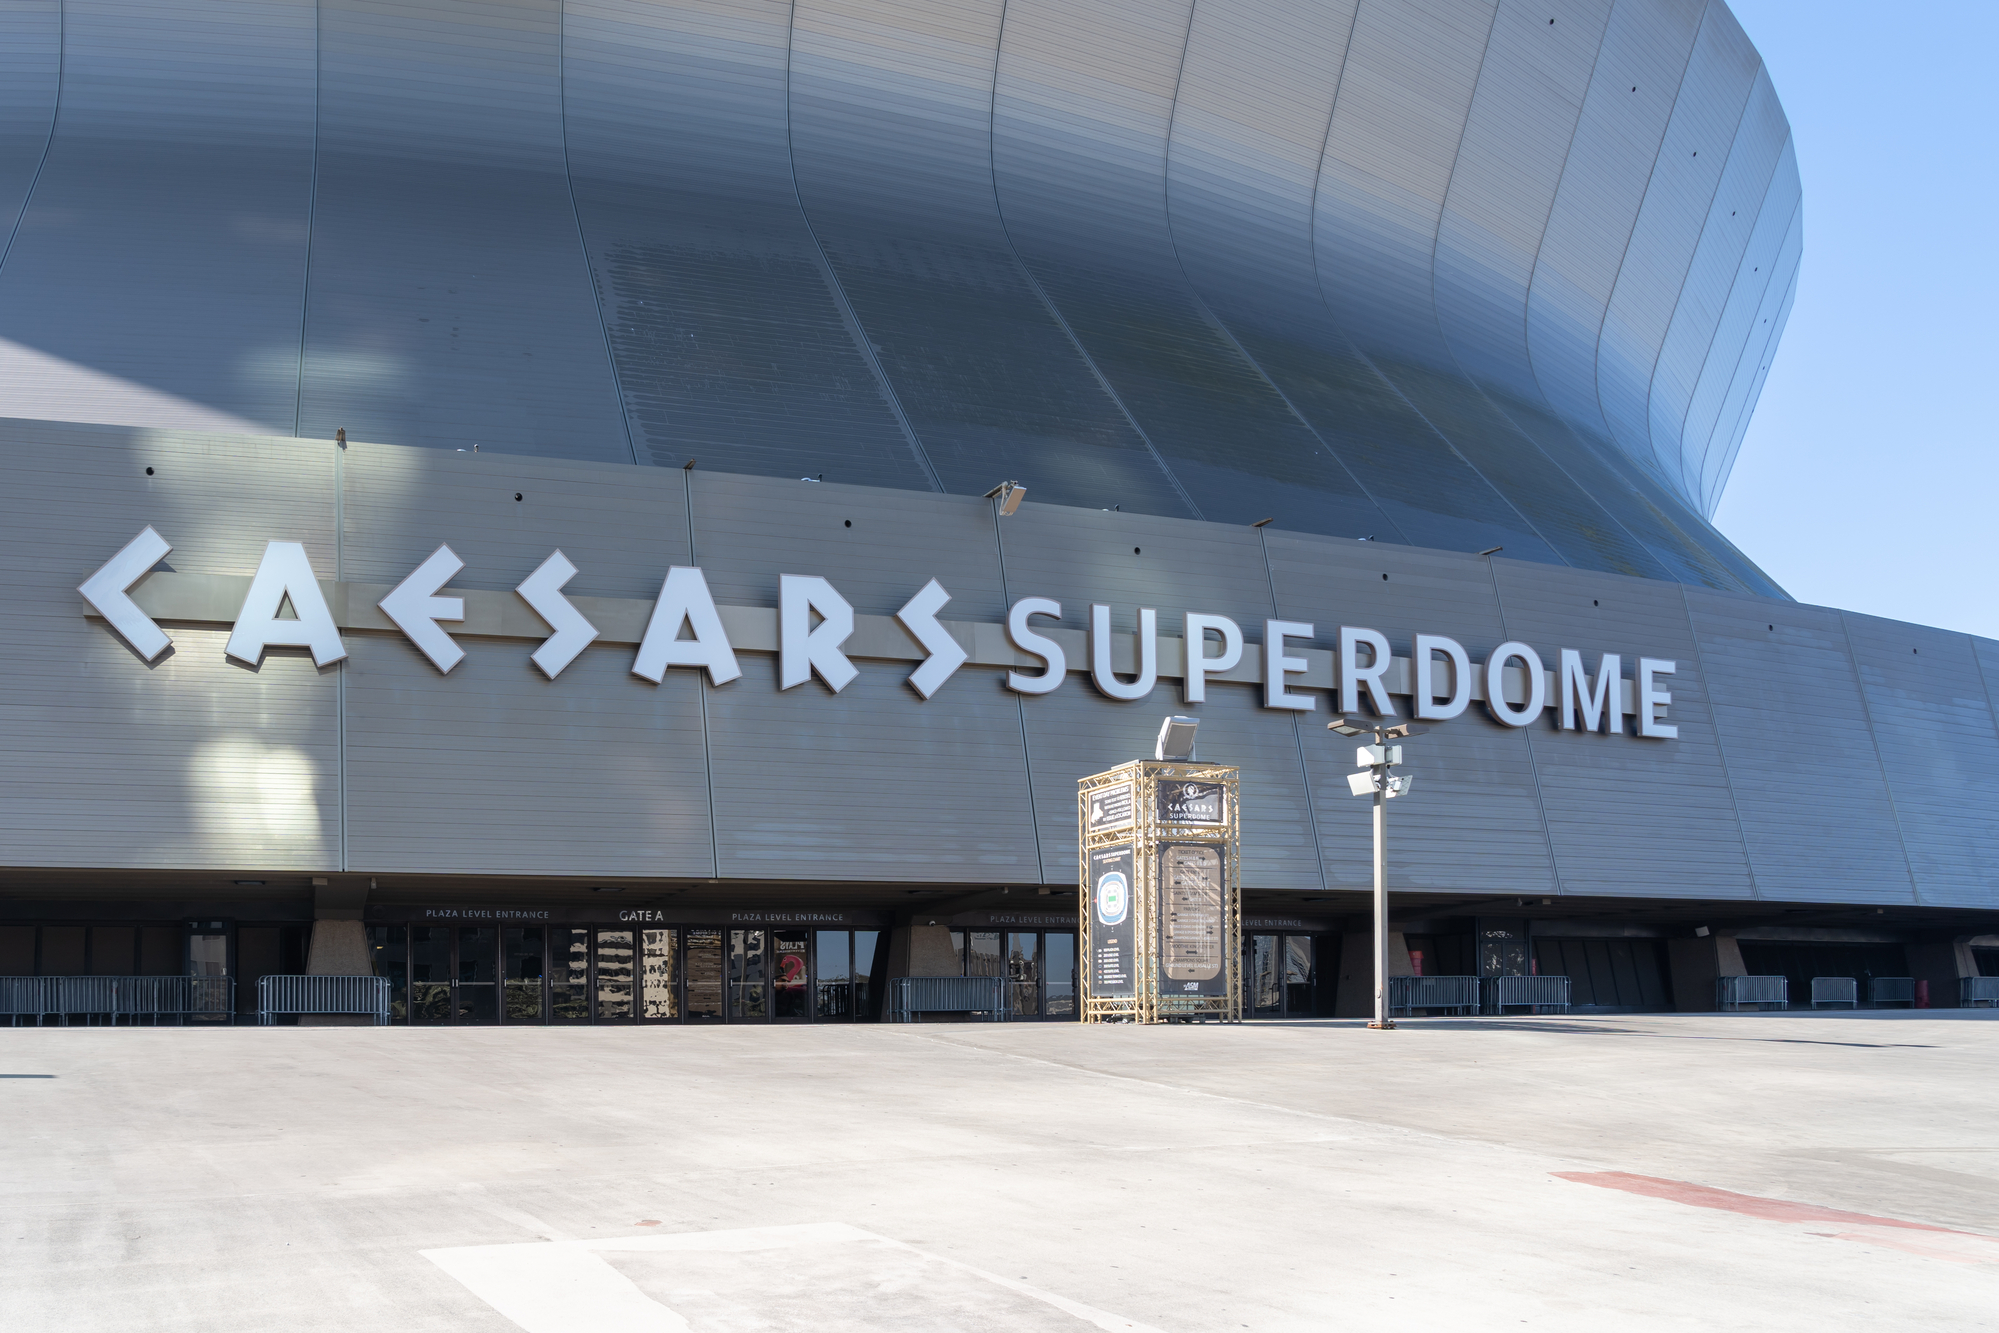 FootballR - NFL - Weitwinkelansicht des Äußeren des Caesars Superdome an einem sonnigen Tag, die seine große, geschwungene Metallfassade zeigt. Der Name des Veranstaltungsortes, „Caesars Superdome“, ist in großen, fetten Buchstaben deutlich zu sehen. Unter der Hauptfassade sind einige kleinere Eingänge und Schilder zu sehen. Der umliegende Bereich ist geräumig und leer, bereit, die Fans der New Orleans Saints willkommen zu heißen. Diese Beschreibung wurde automatisch generiert.